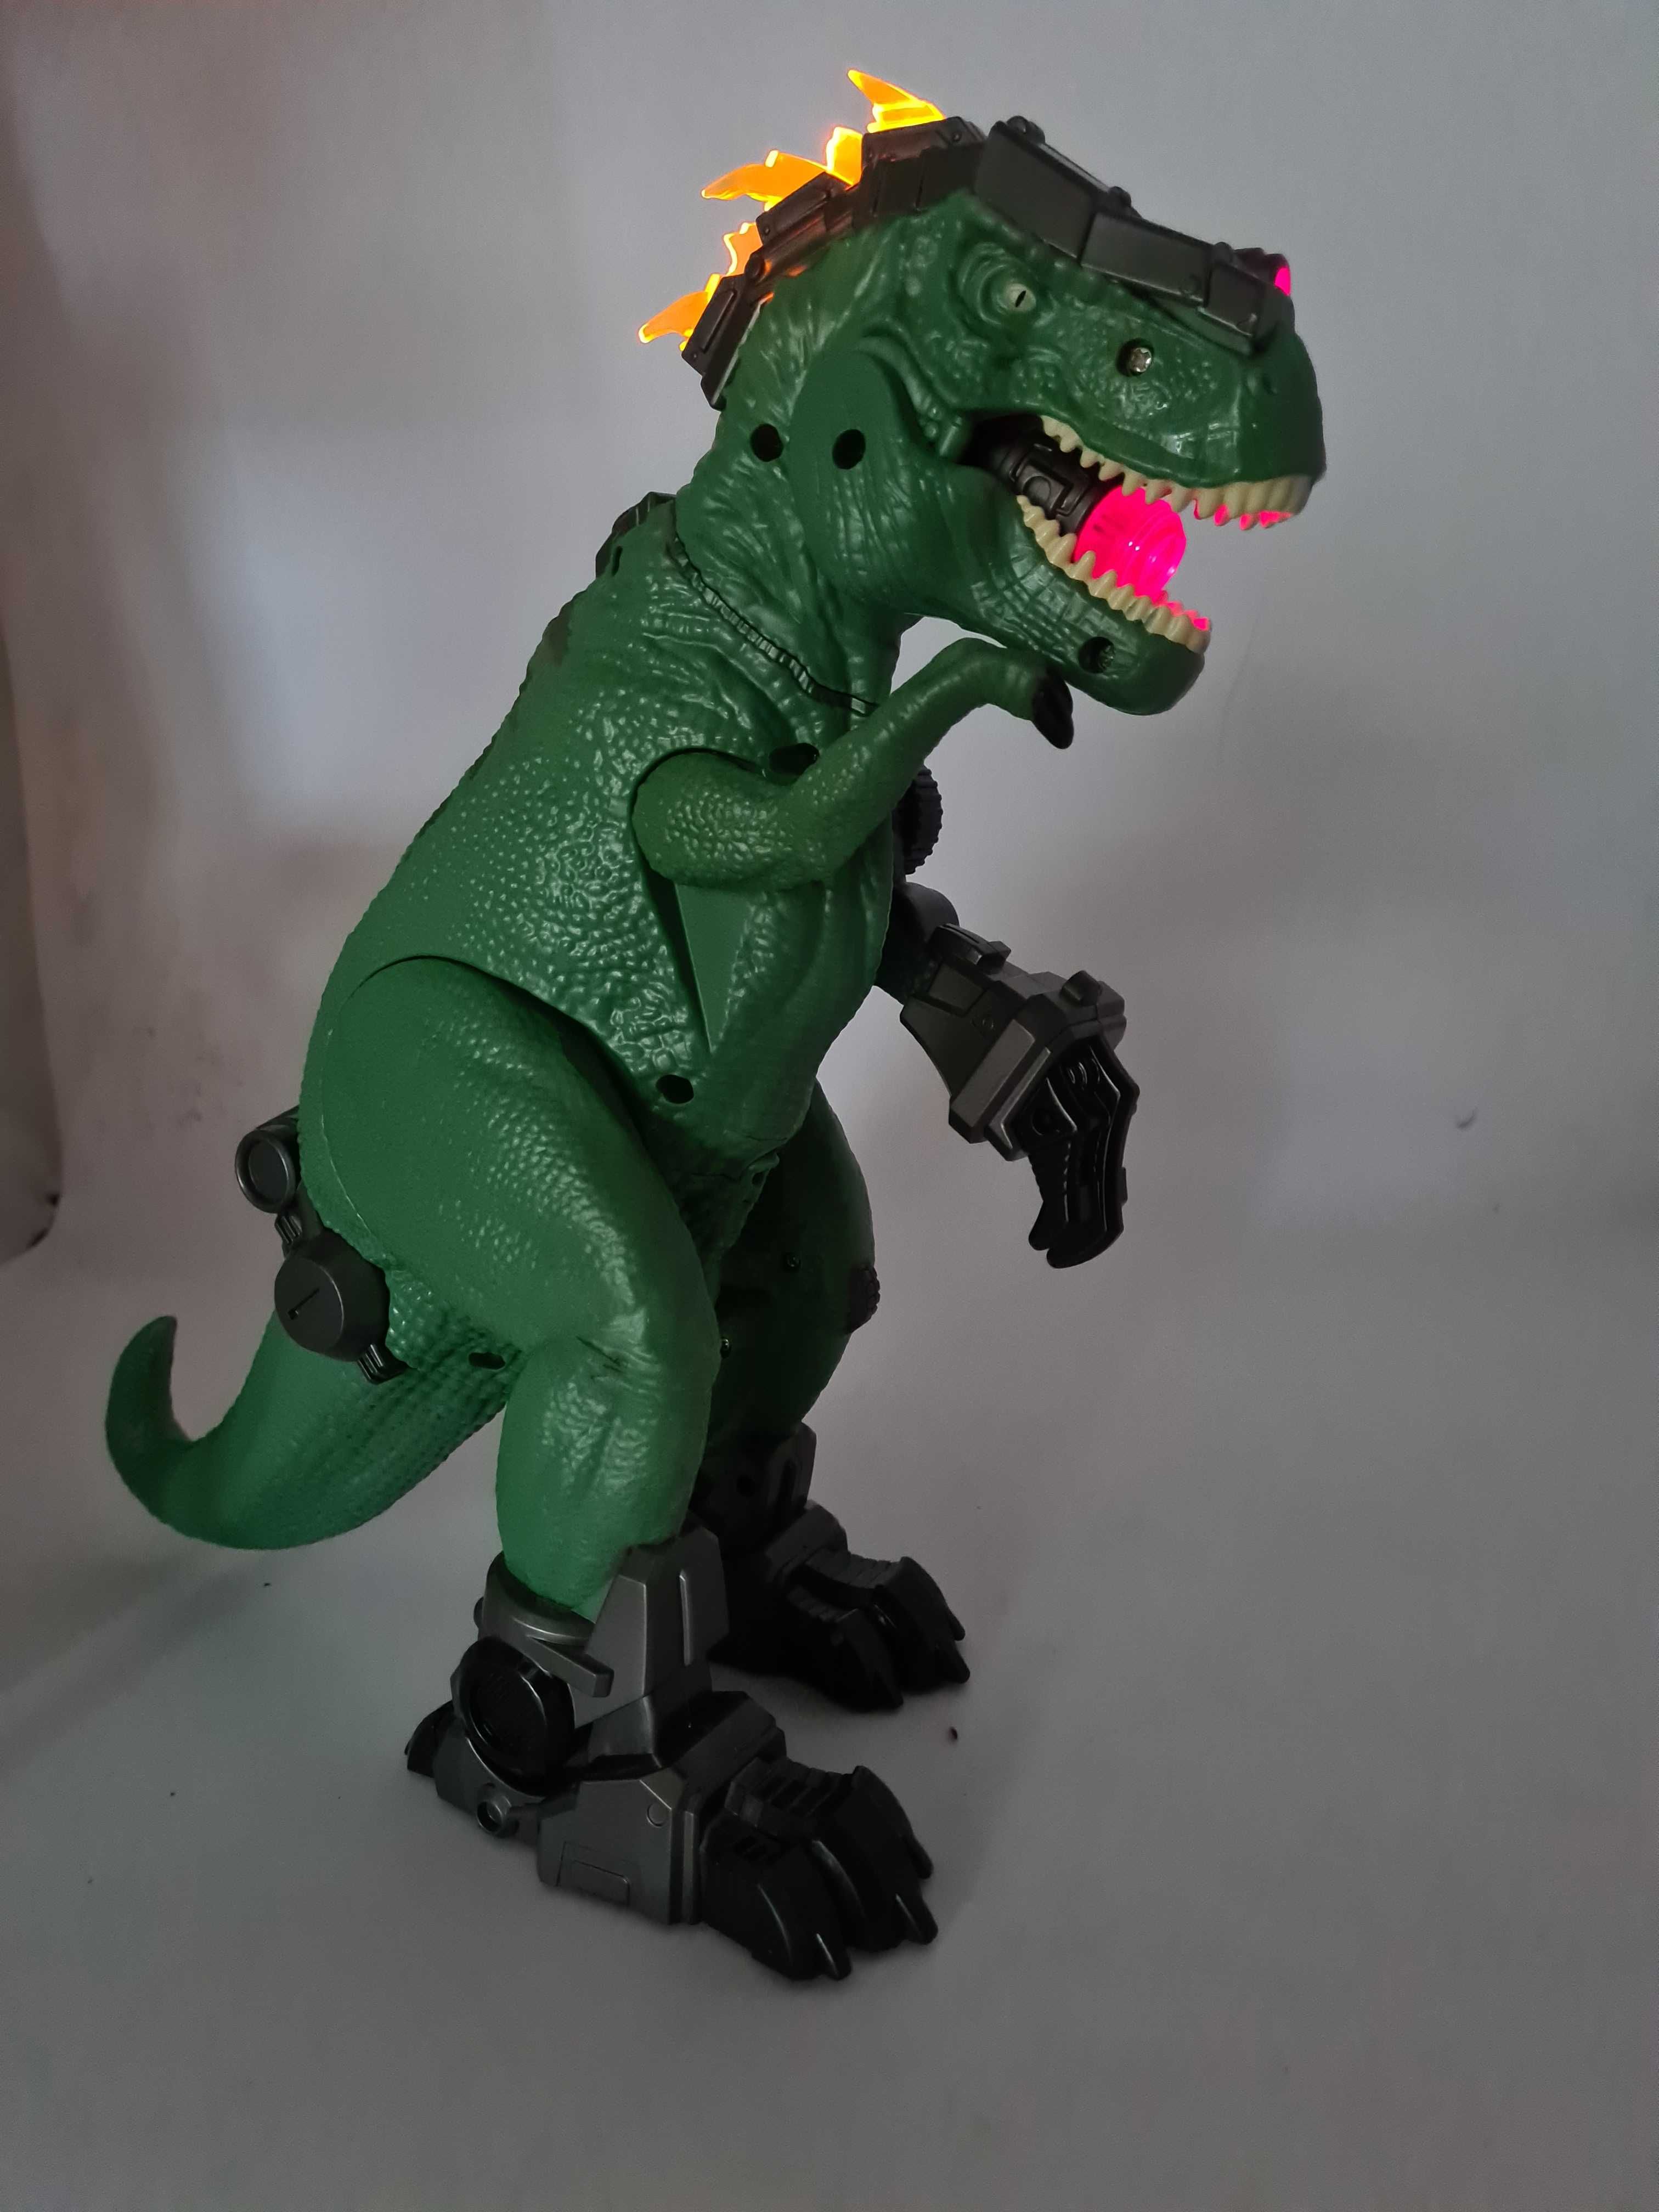 dinozaur interaktywny duży 35 cm wysokości